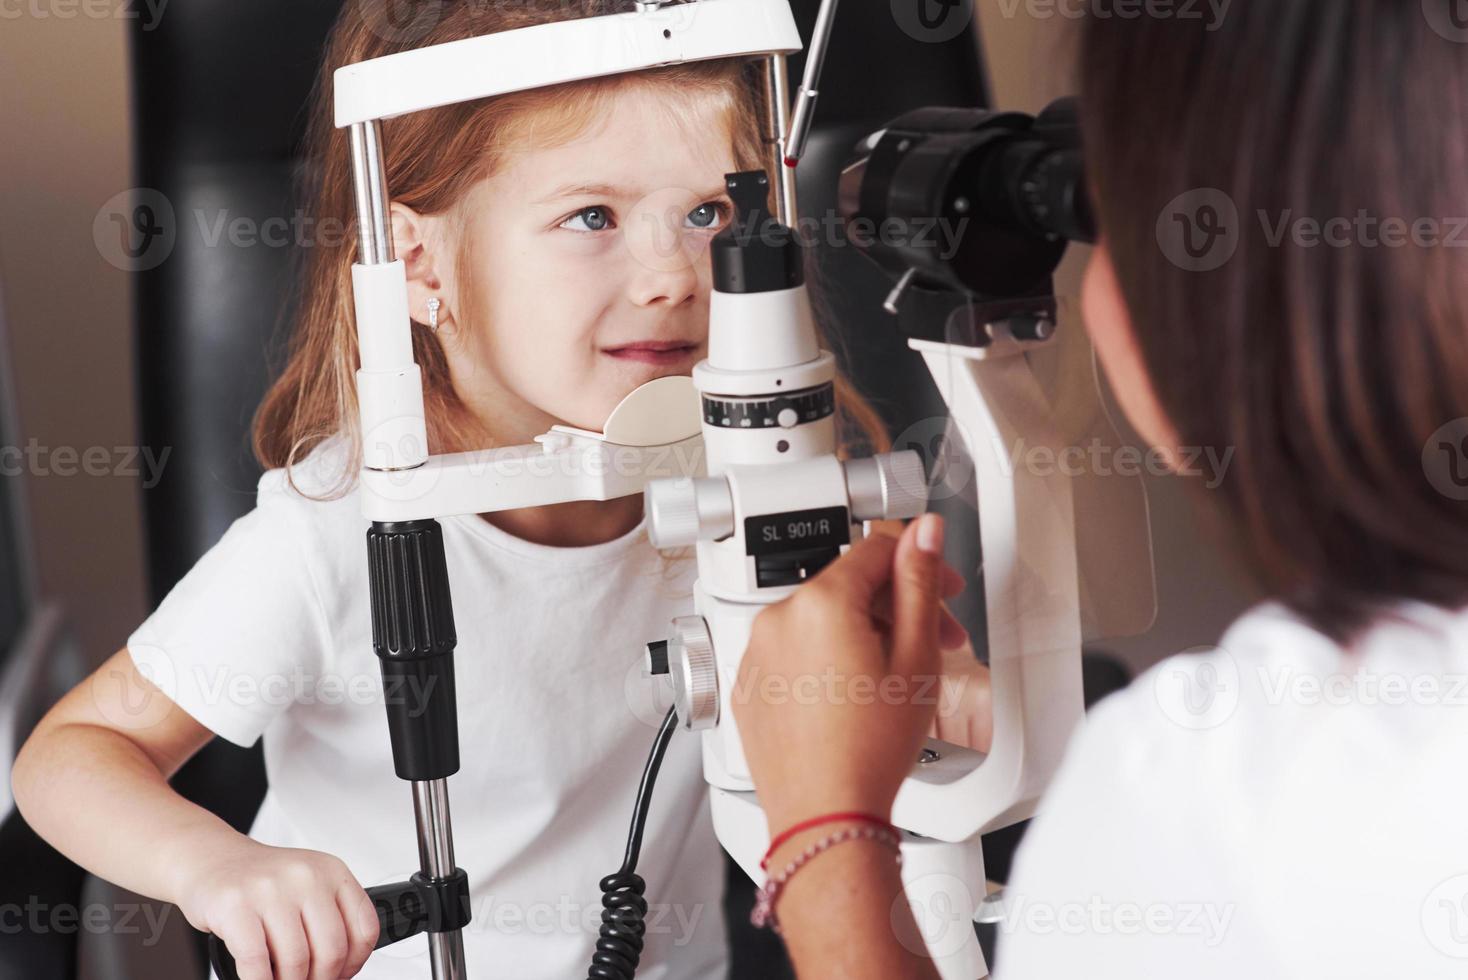 mirar de frente. La niña tiene una prueba para sus ojos con un aparato óptico especial por una doctora. foto